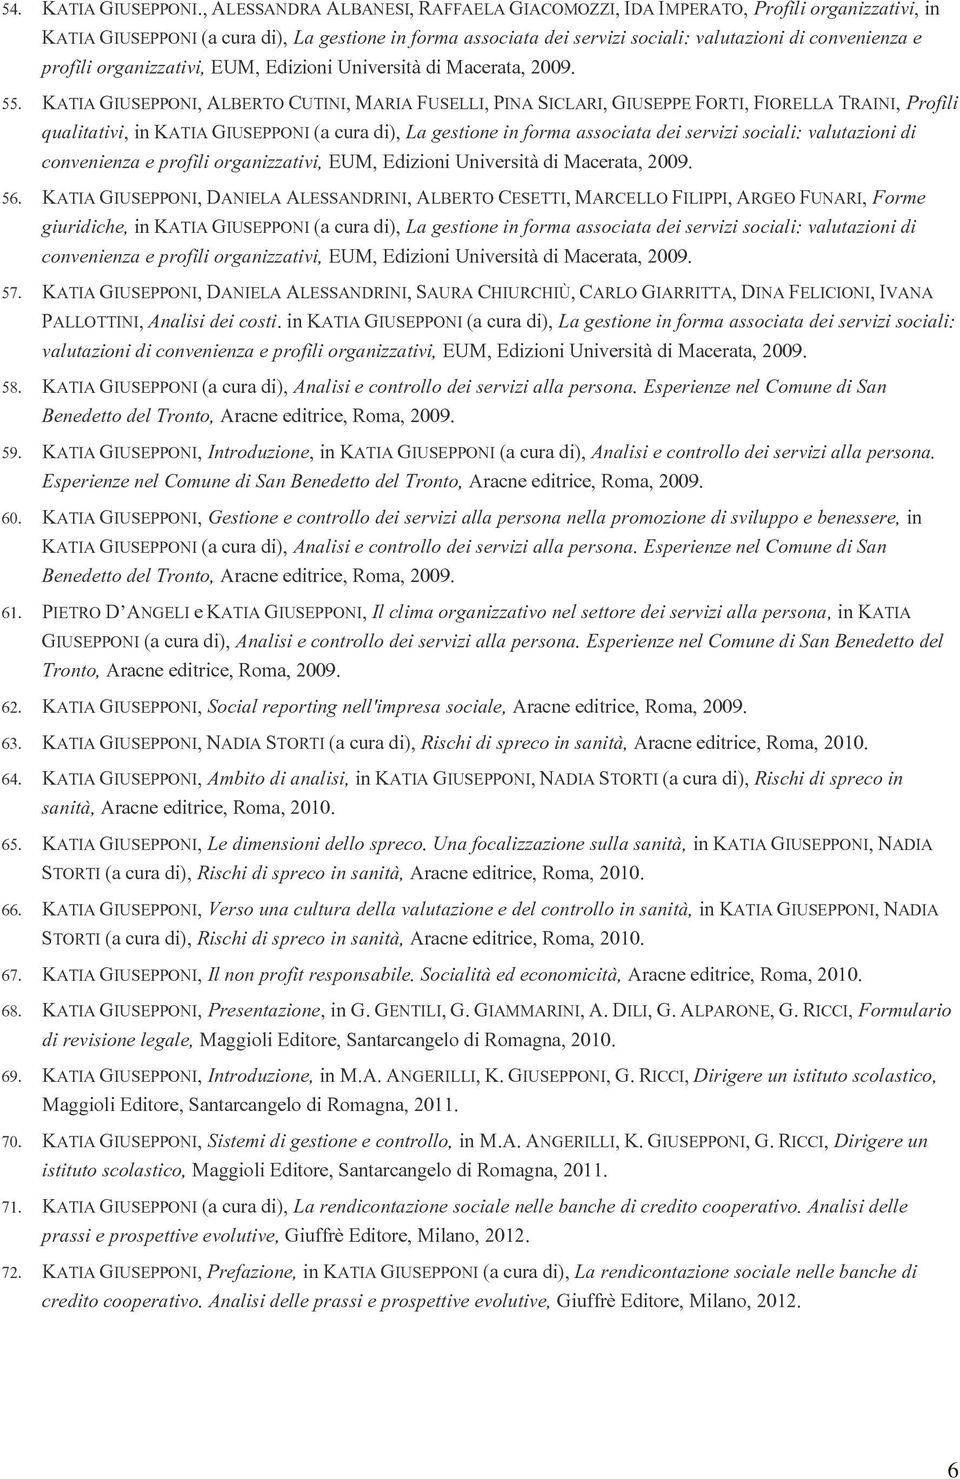 profili organizzativi, EUM, Edizioni Università di Macerata, 2009. 55.